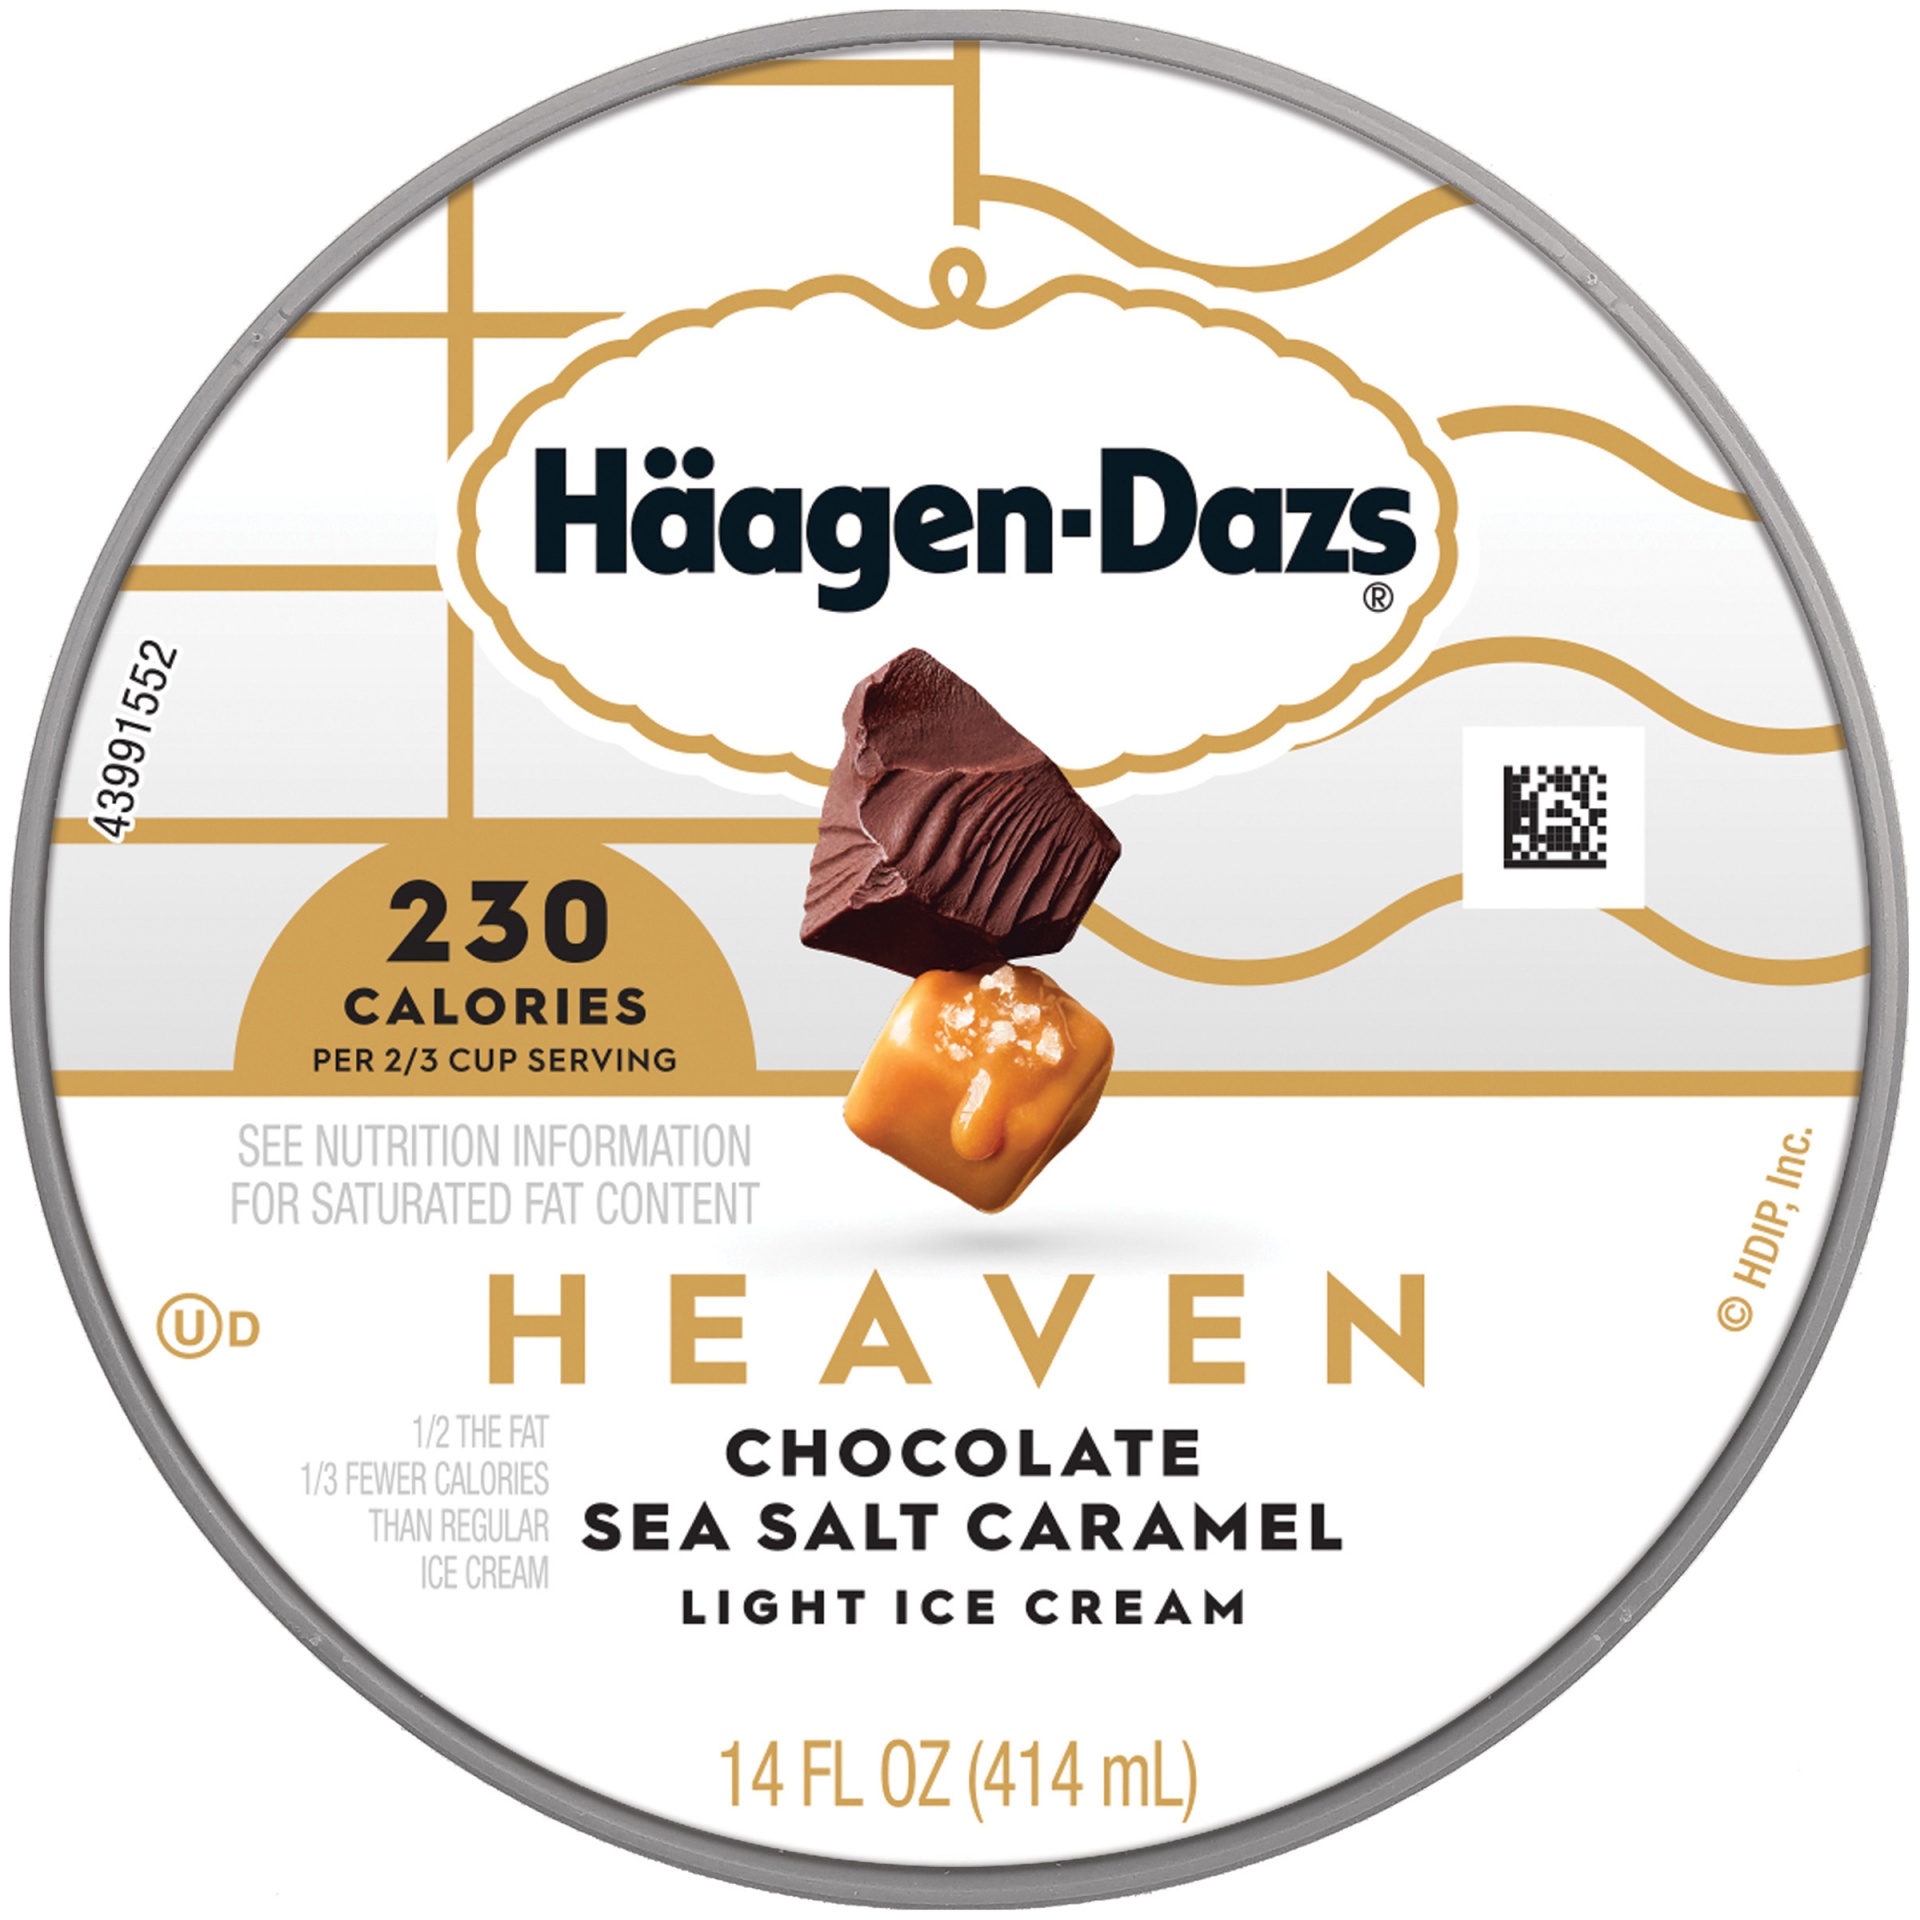 slide 7 of 7, Häagen-Dazs Heaven Chocolate Sea Salt Caramel Light Ice Cream, 14 fl oz